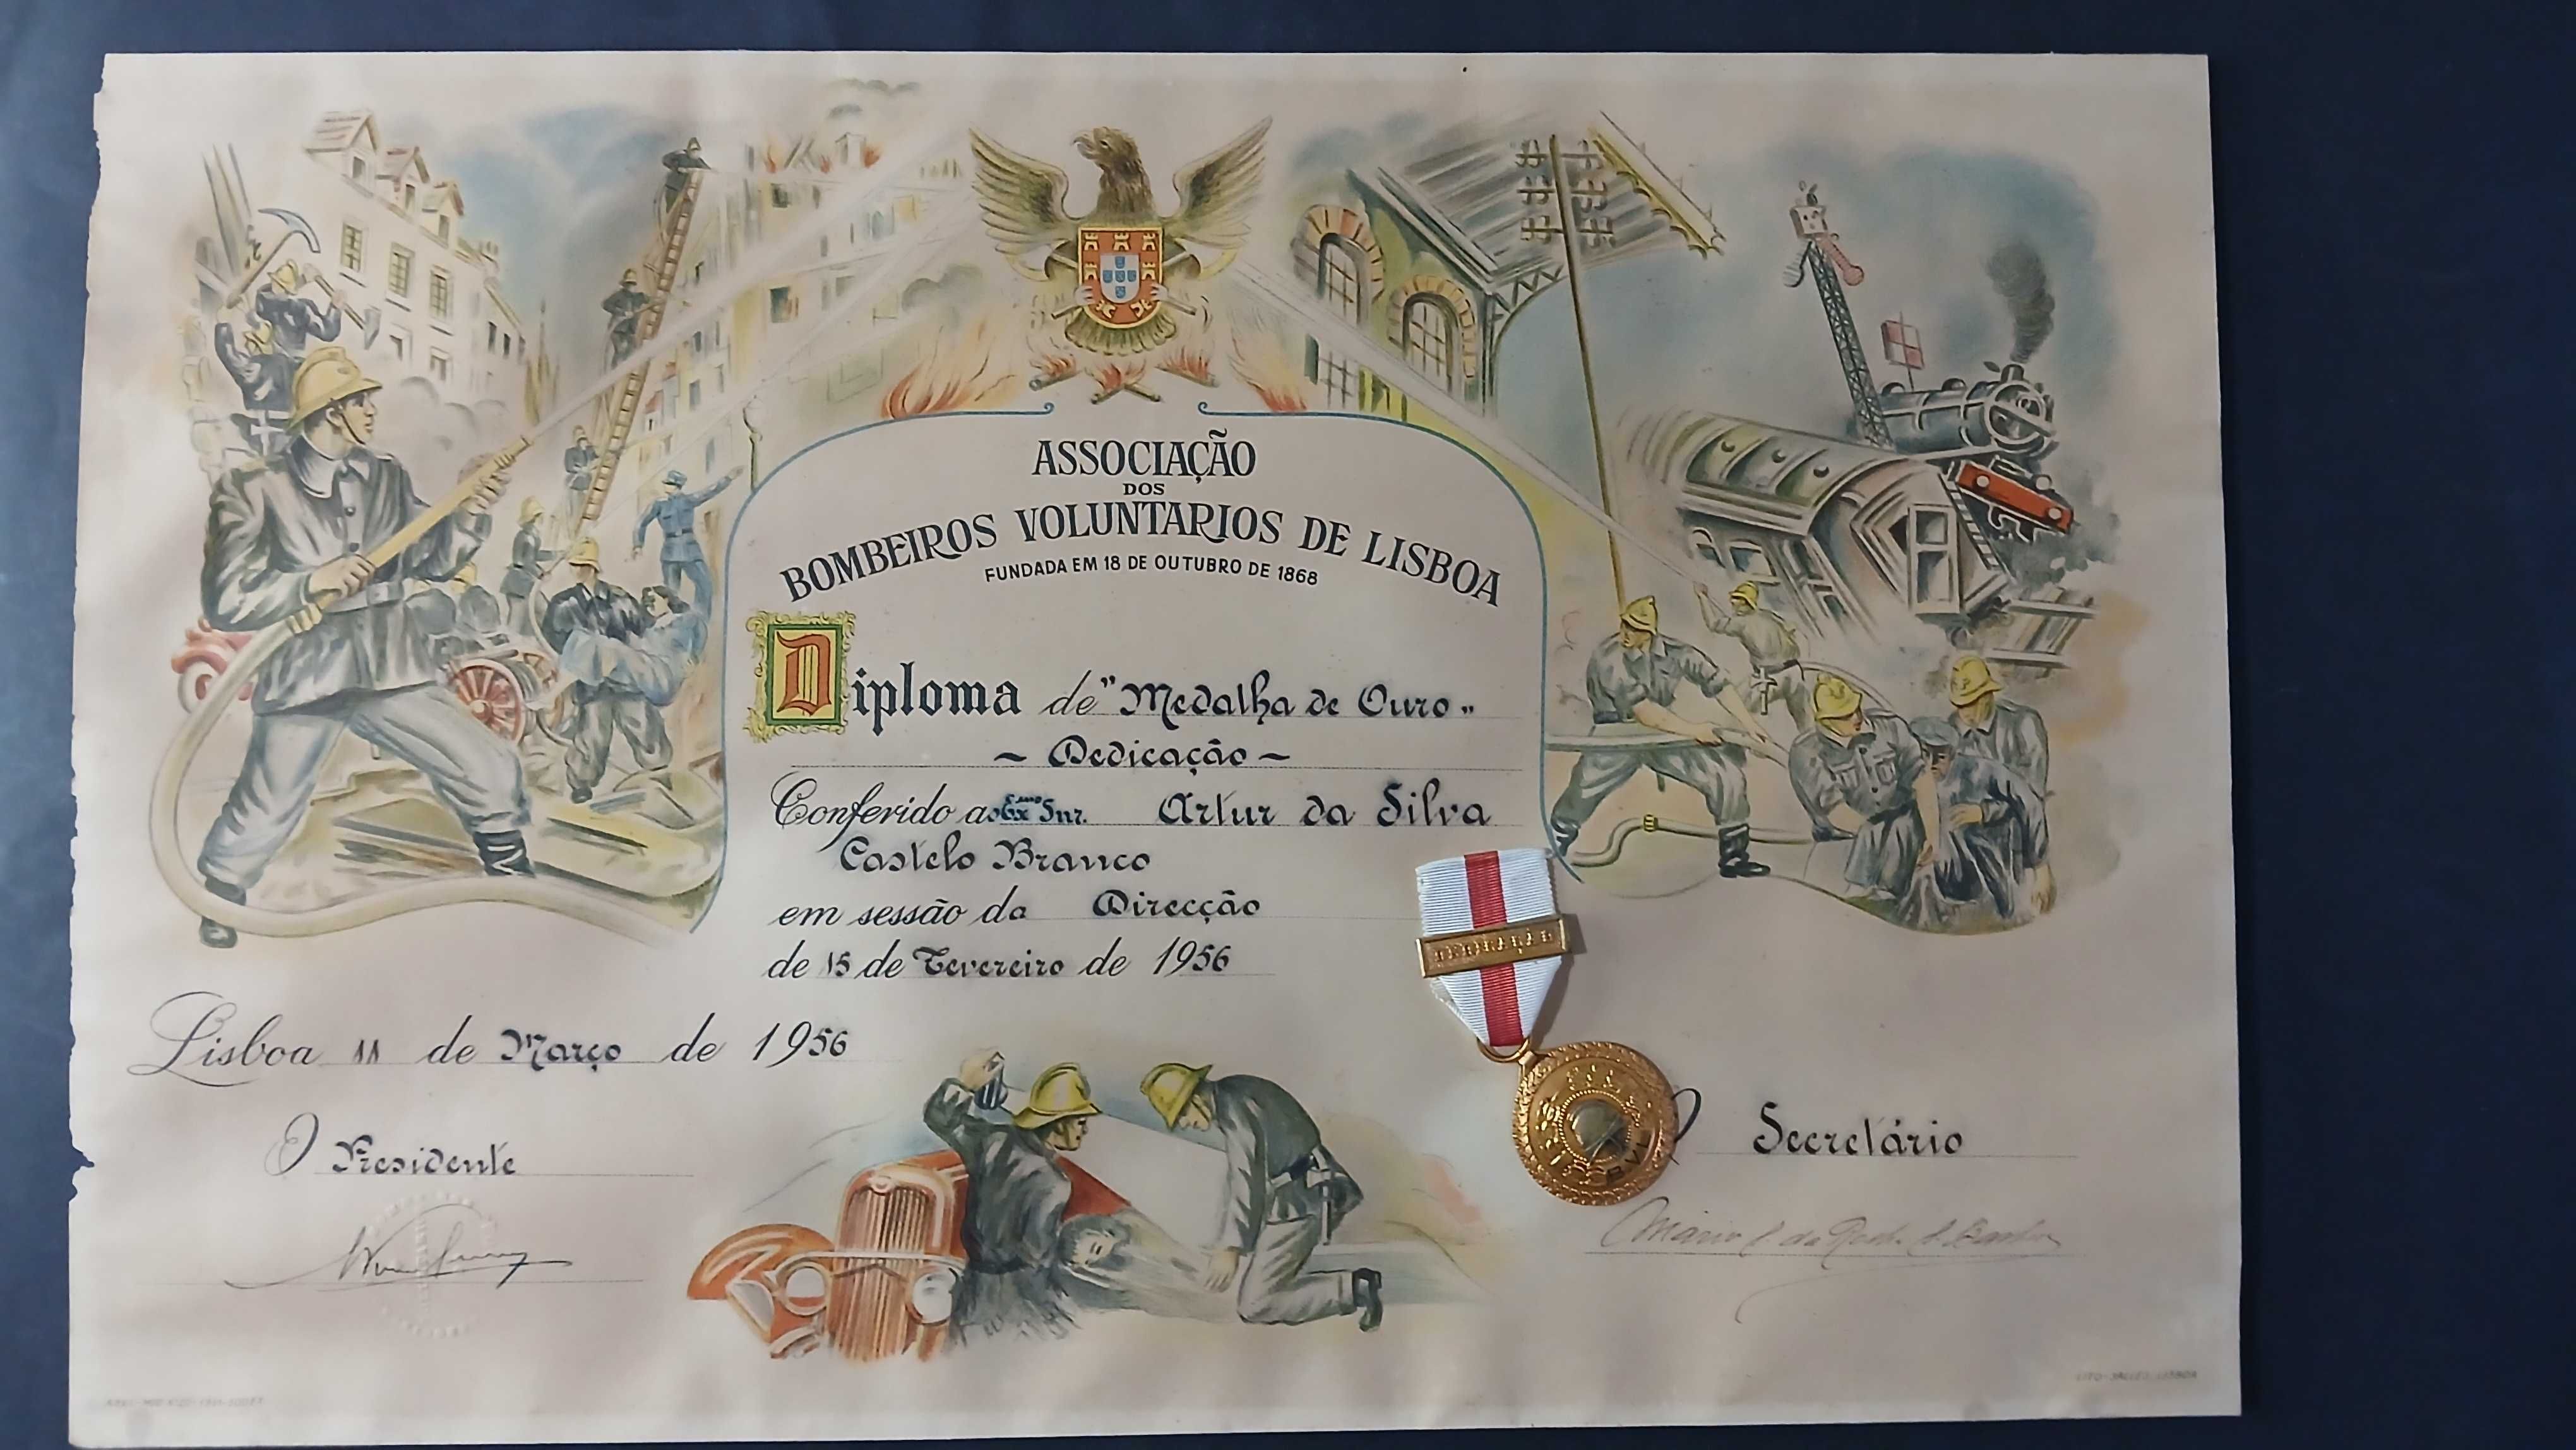 Diploma e medalha de ouro bombeiros voluntários de lisboa 1956